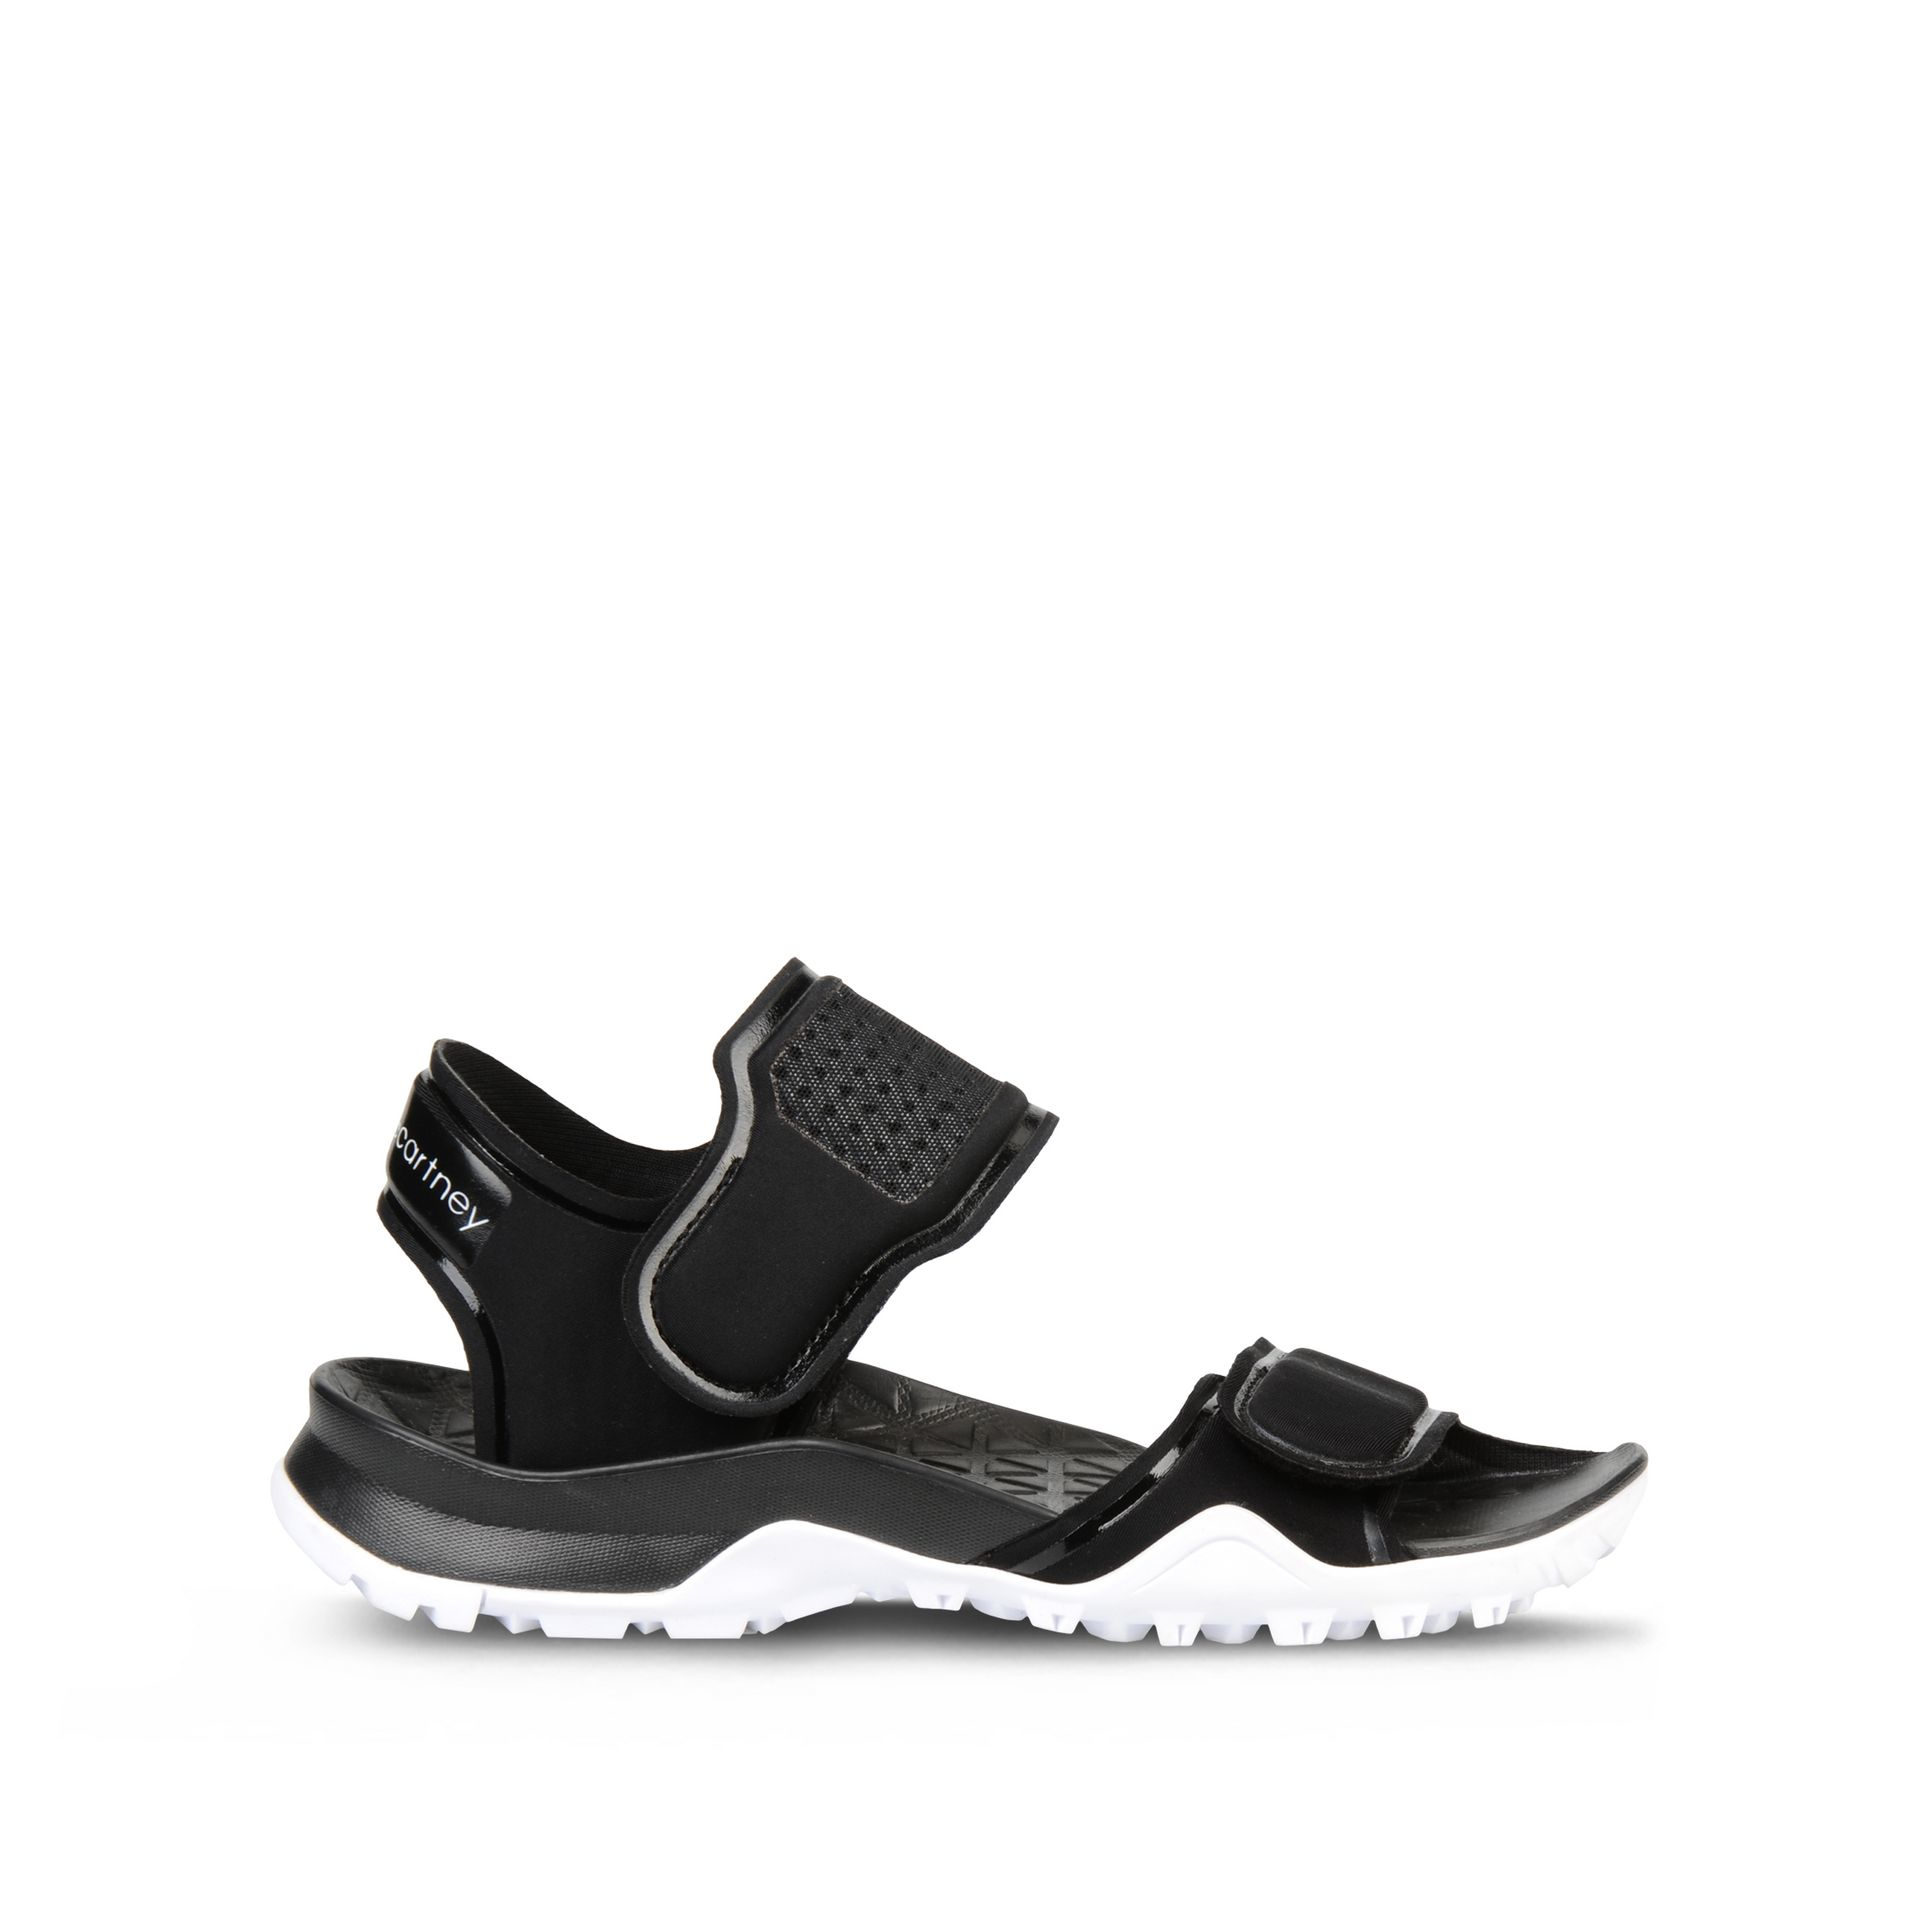 Lyst - adidas By Stella McCartney Black Sandals in Black